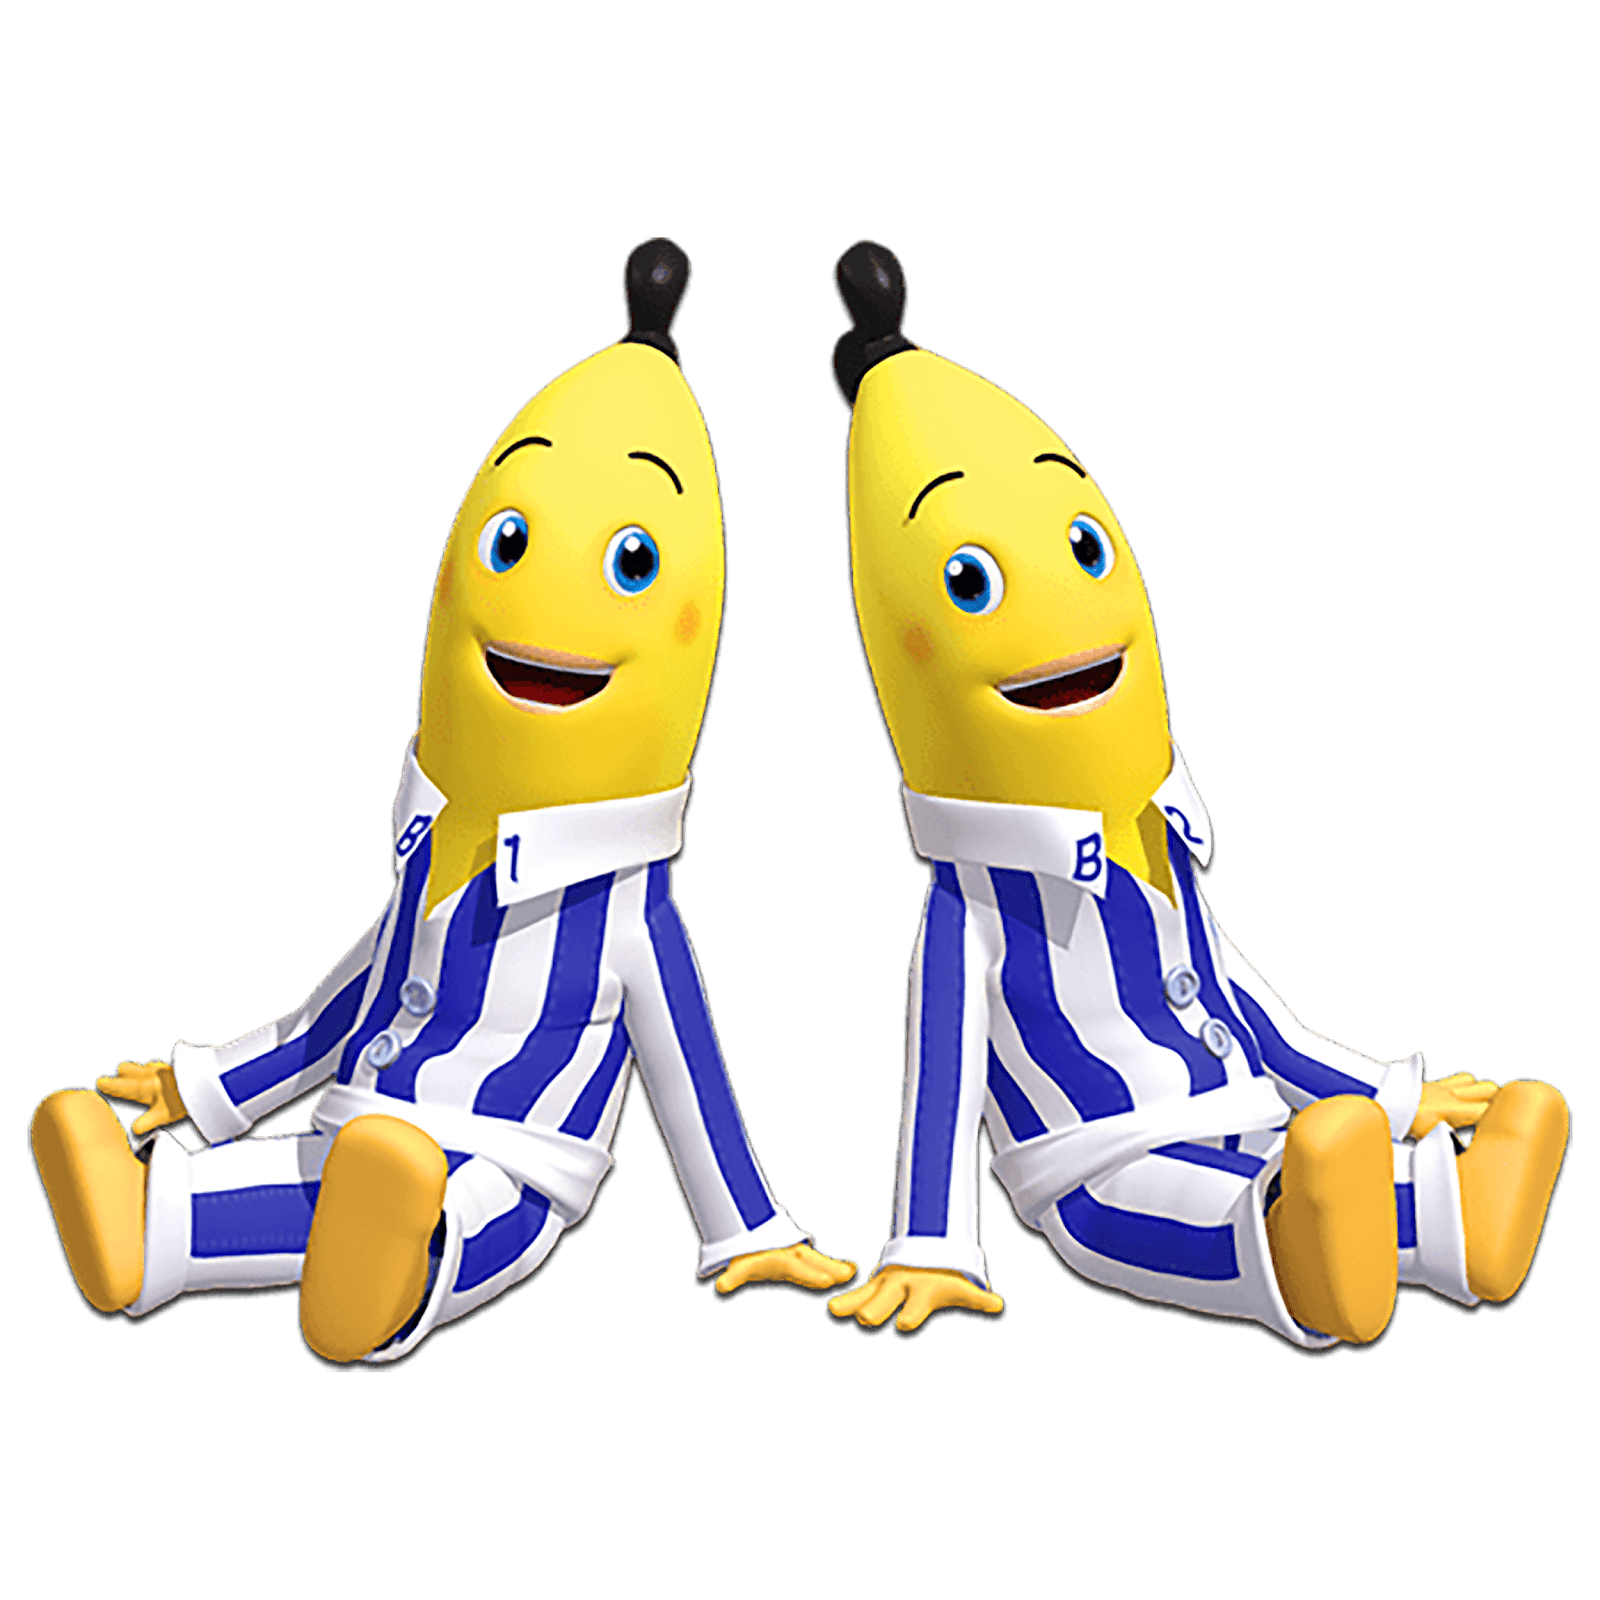 imagen Gigante de los personajes de Banana en Pijamas   en png con fondo transparente